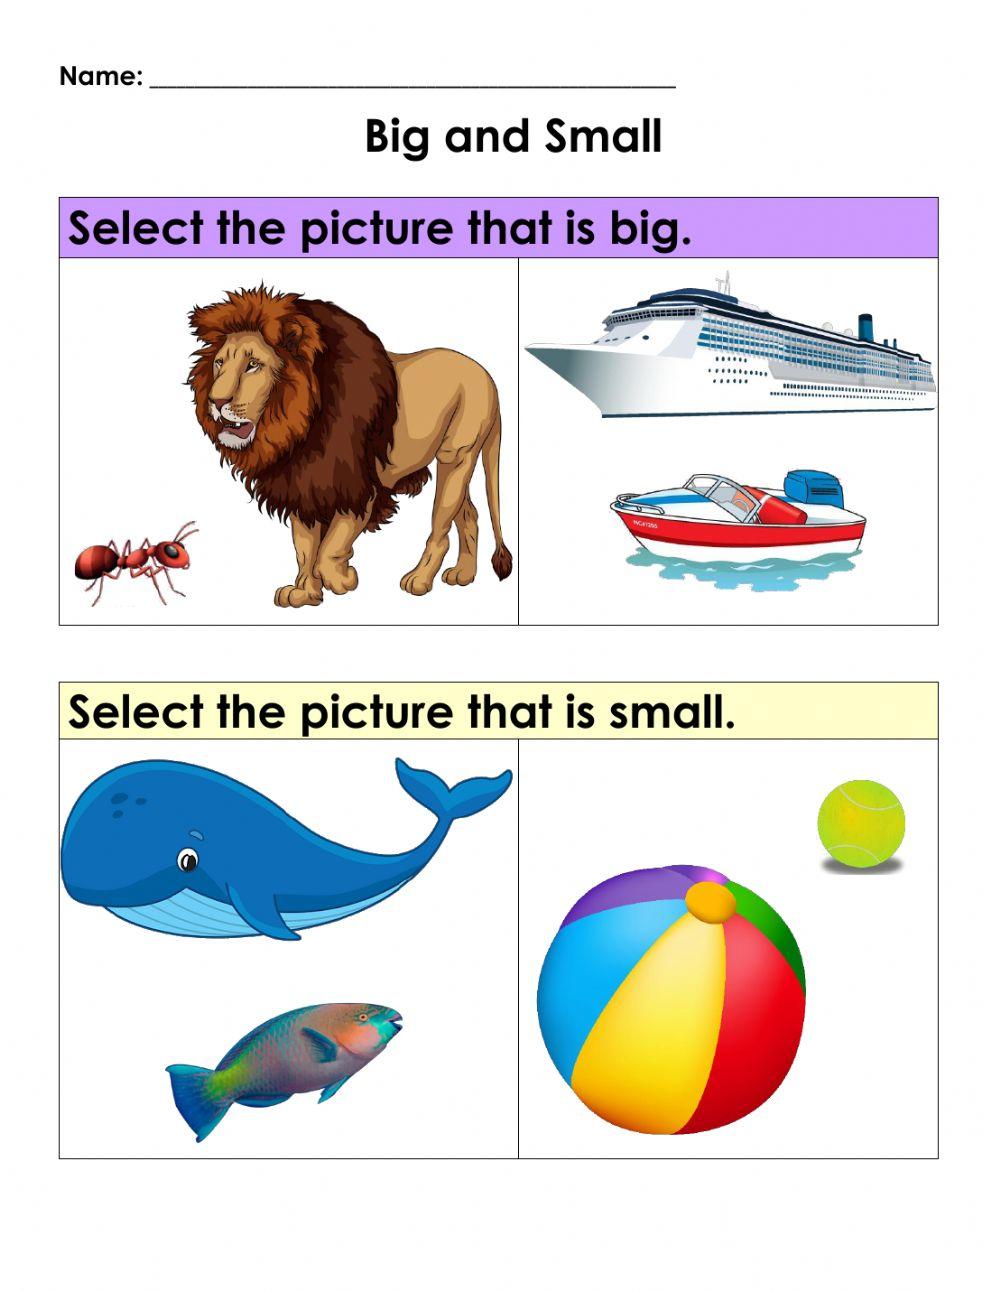 Maths Concepts: Big vs Small